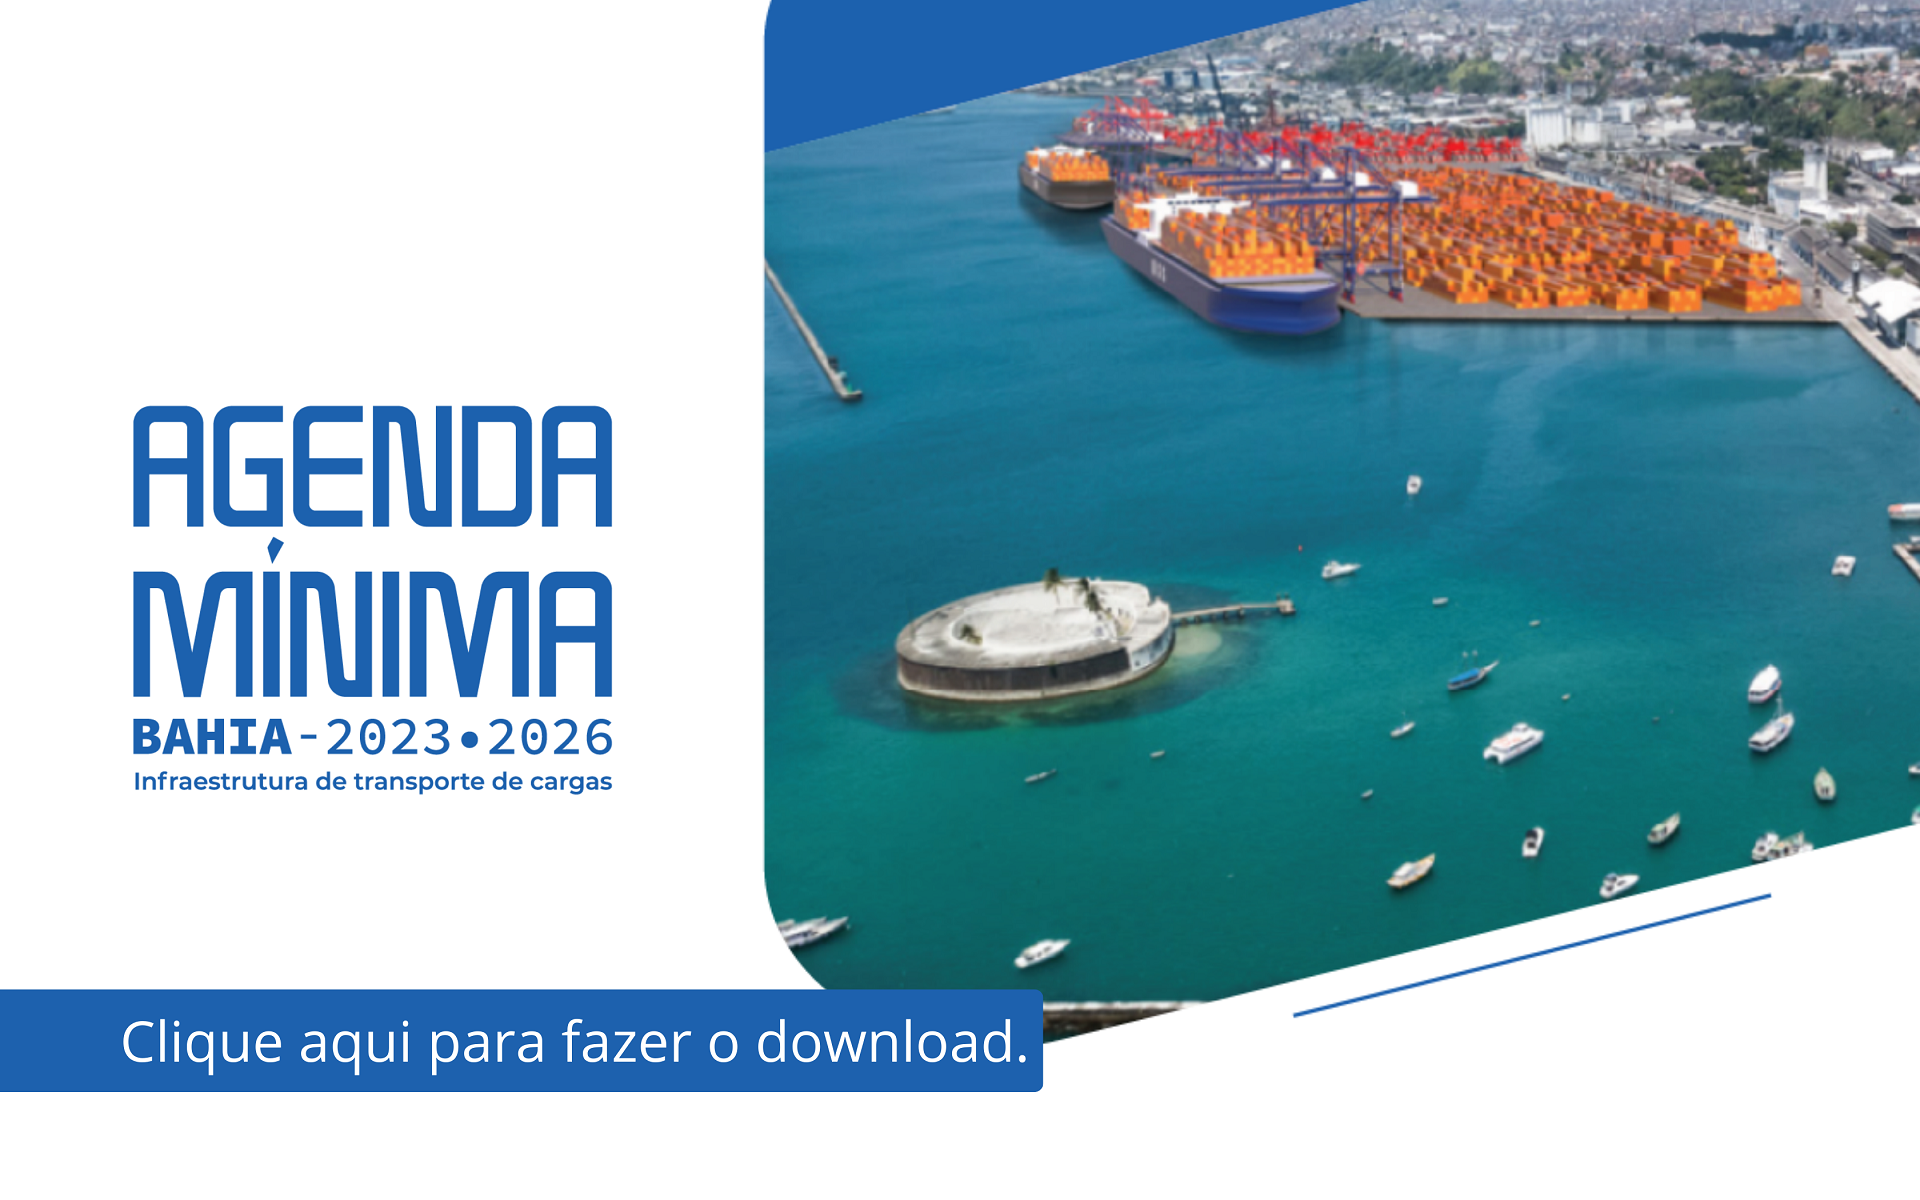 Agenda Mínima da Bahia 2023-2026